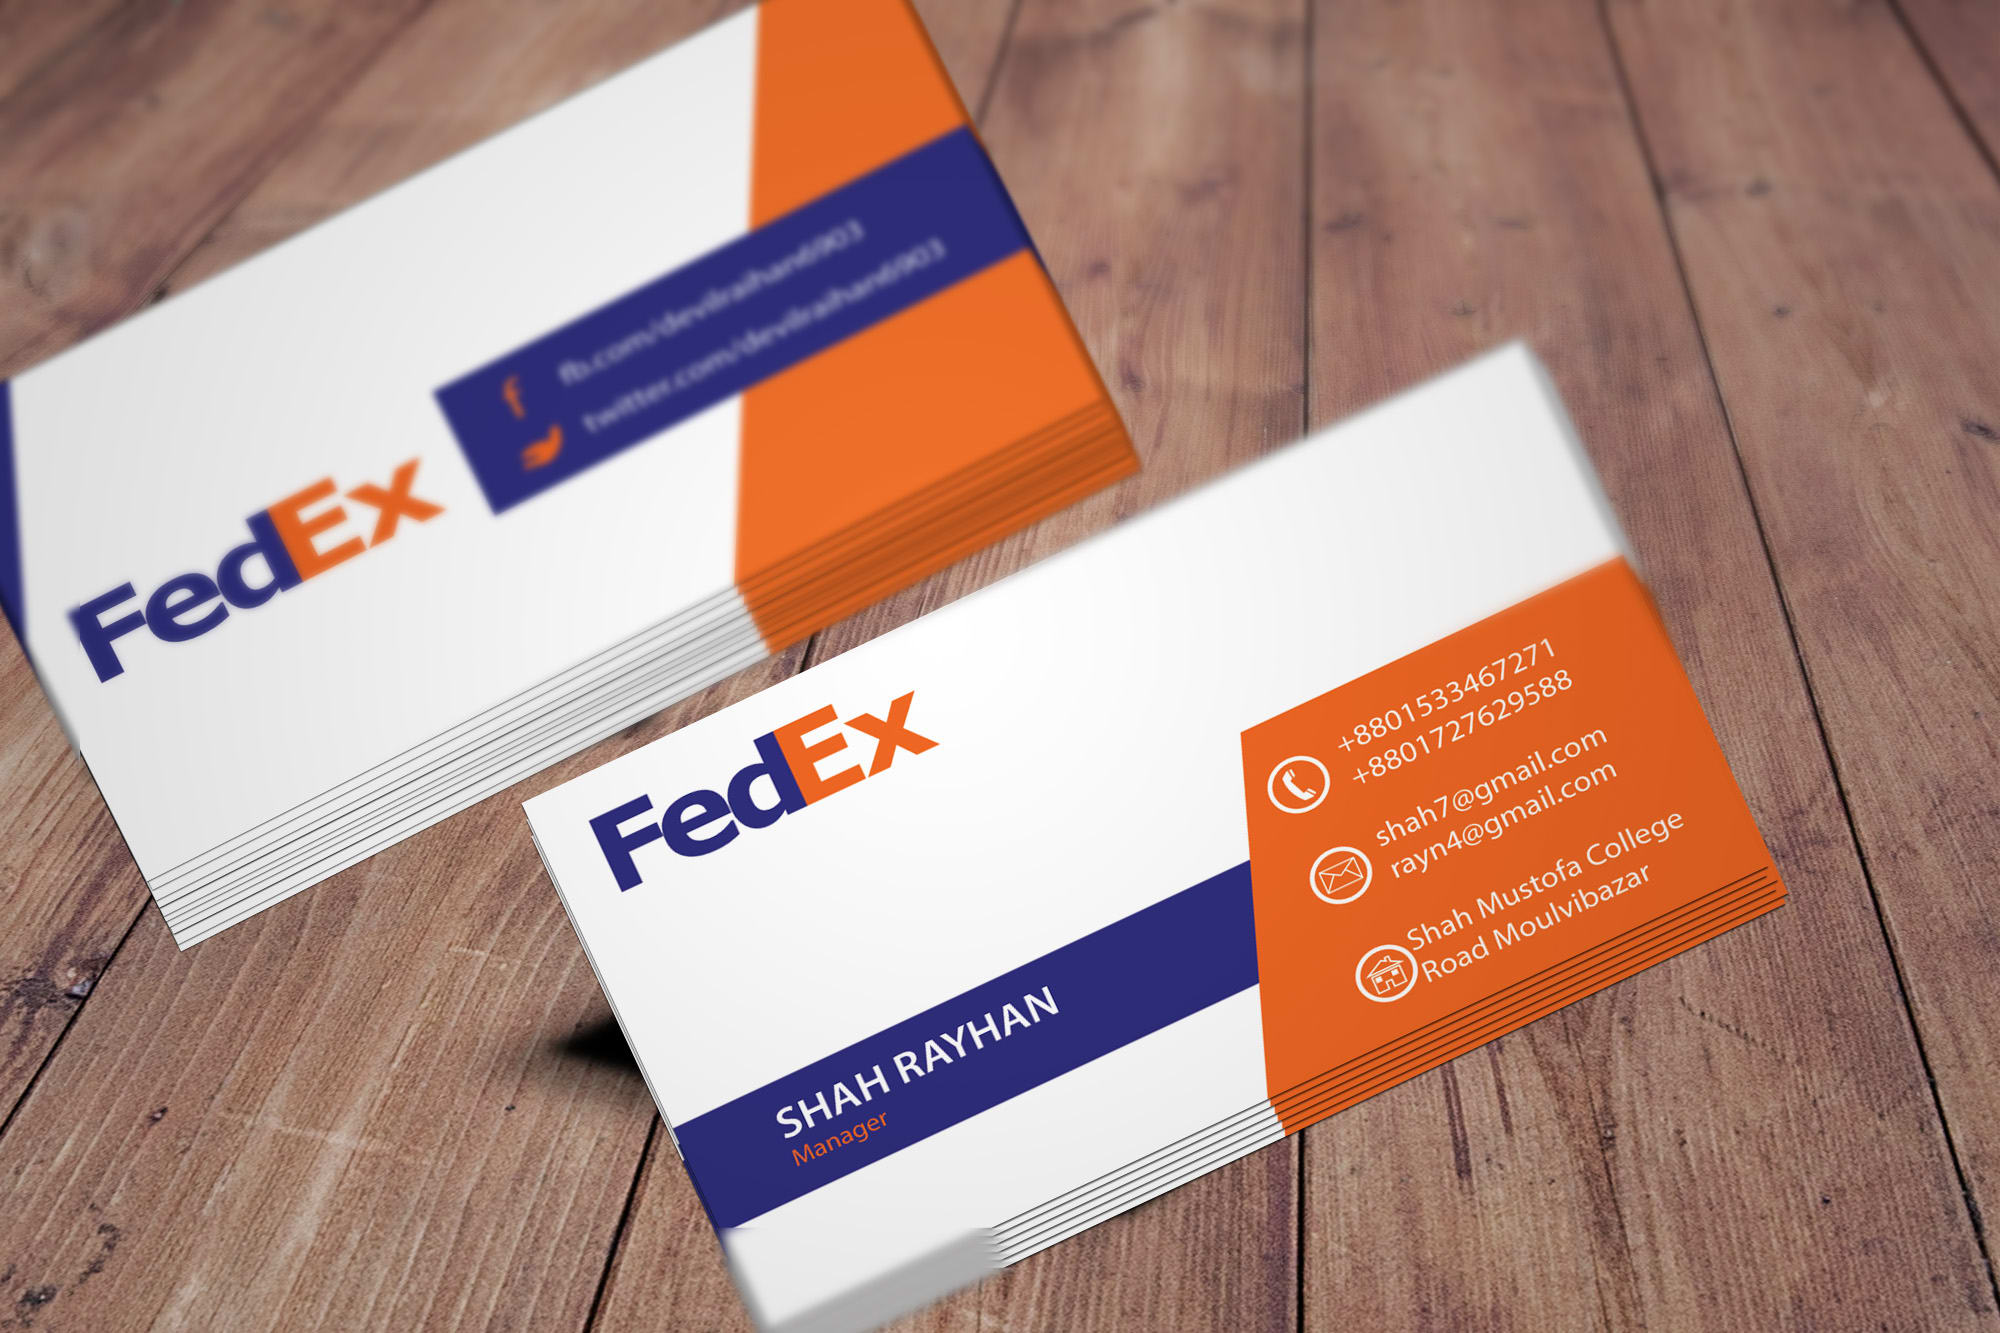 fedex com business cards 1